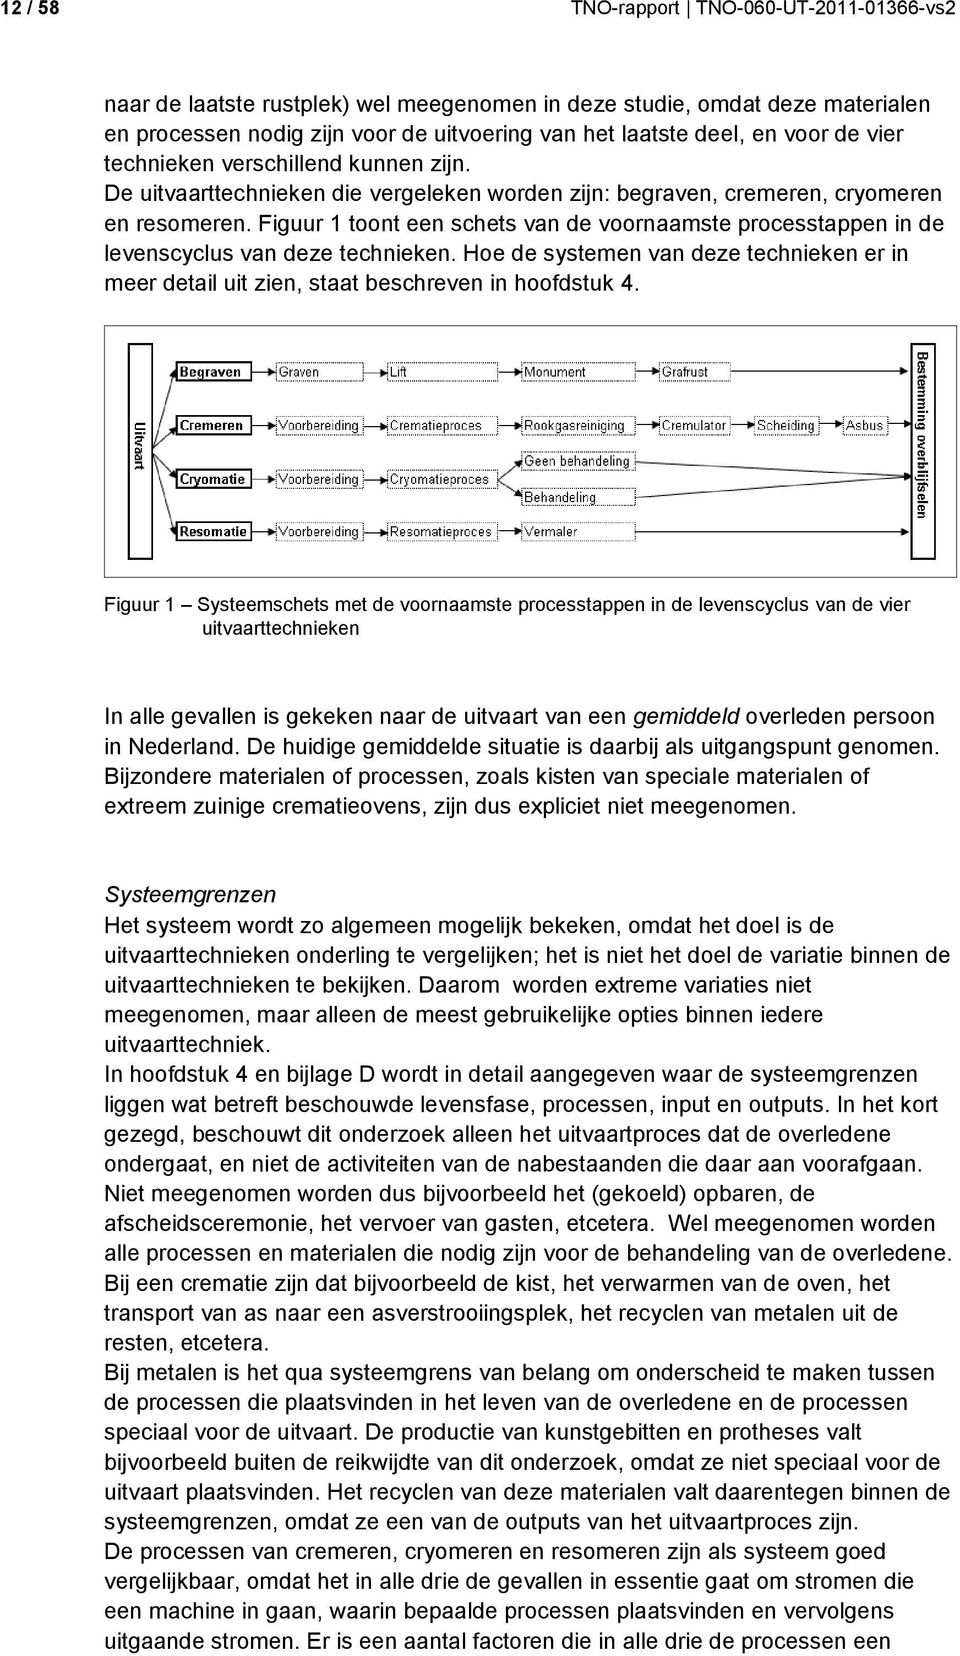 Figuur 1 toont een schets van de voornaamste processtappen in de levenscyclus van deze technieken. Hoe de systemen van deze technieken er in meer detail uit zien, staat beschreven in hoofdstuk 4.